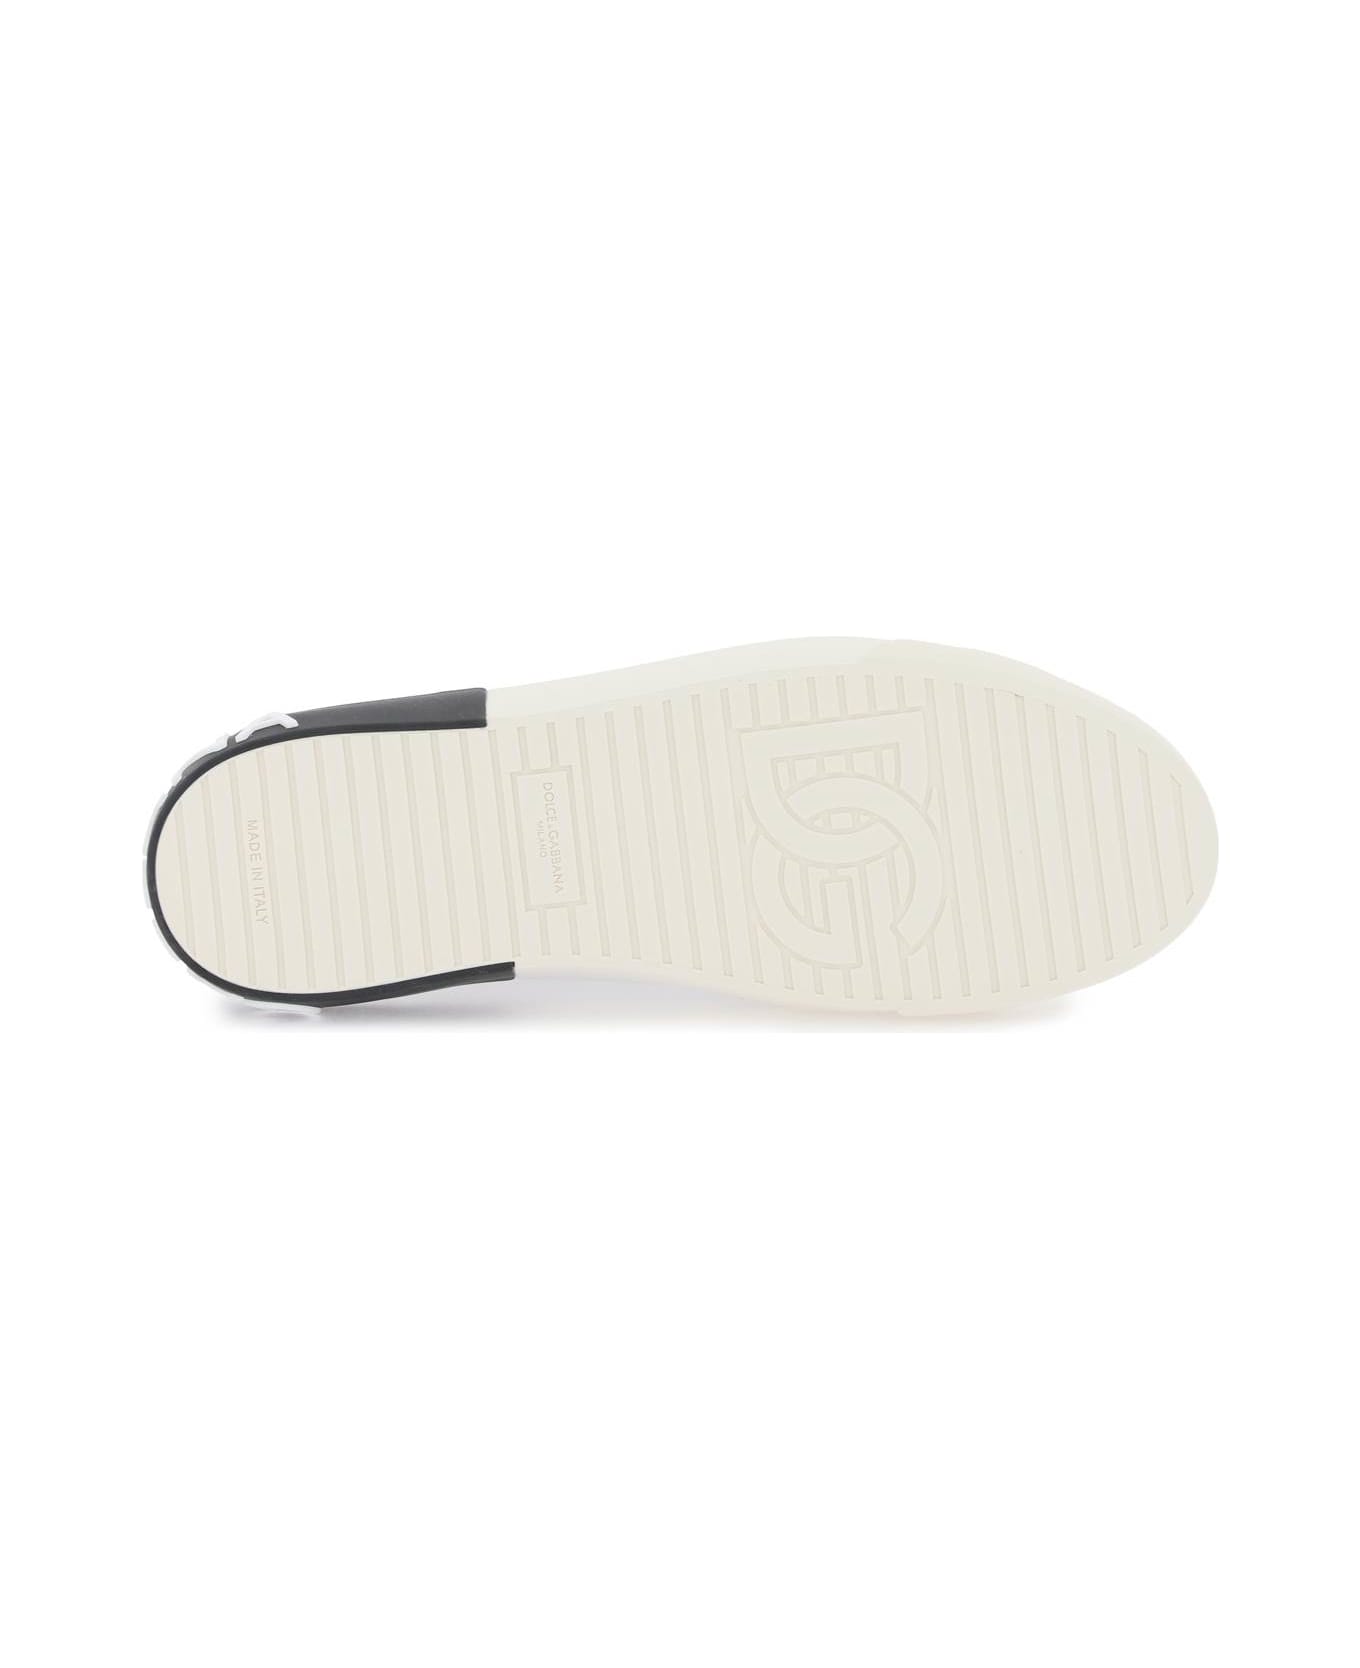 Dolce & Gabbana Portofino Nappa Leather Sneakers - WHITE/BLACK